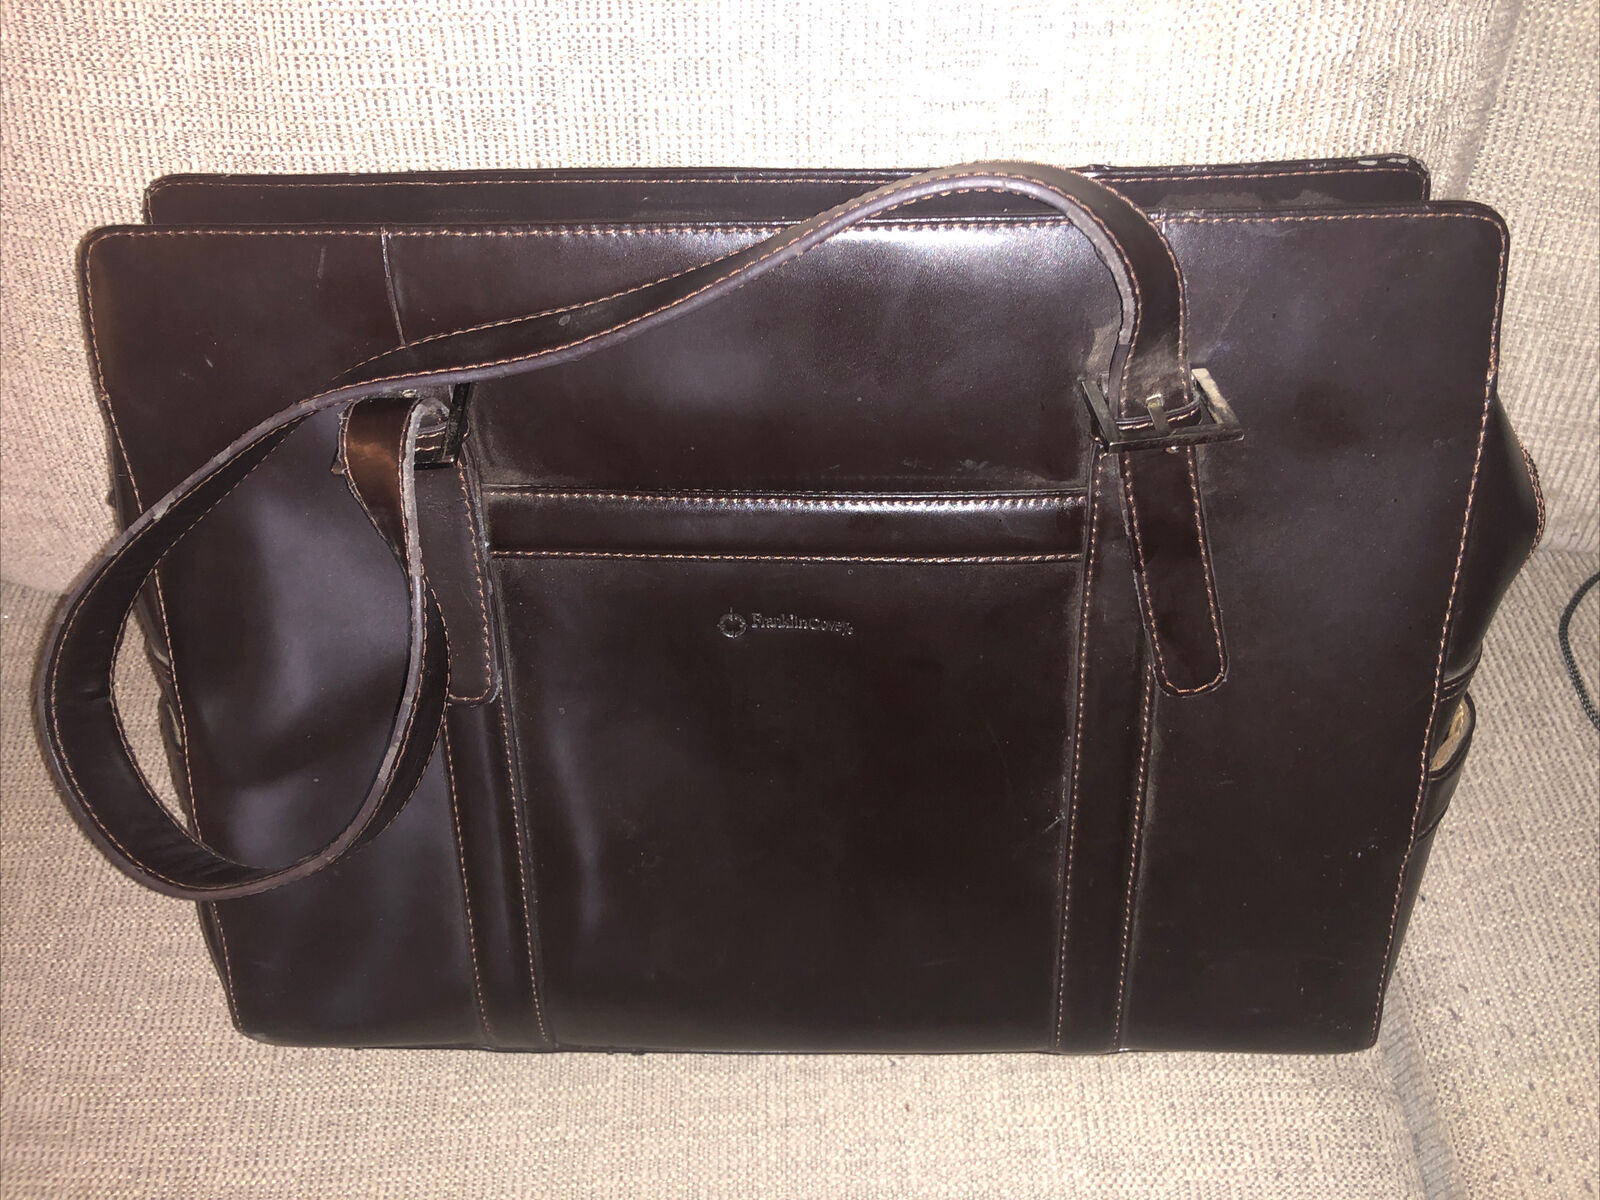 Franklin Covey Black Leather Work Laptop Bag Briefcase Shoulder Tote Organizer